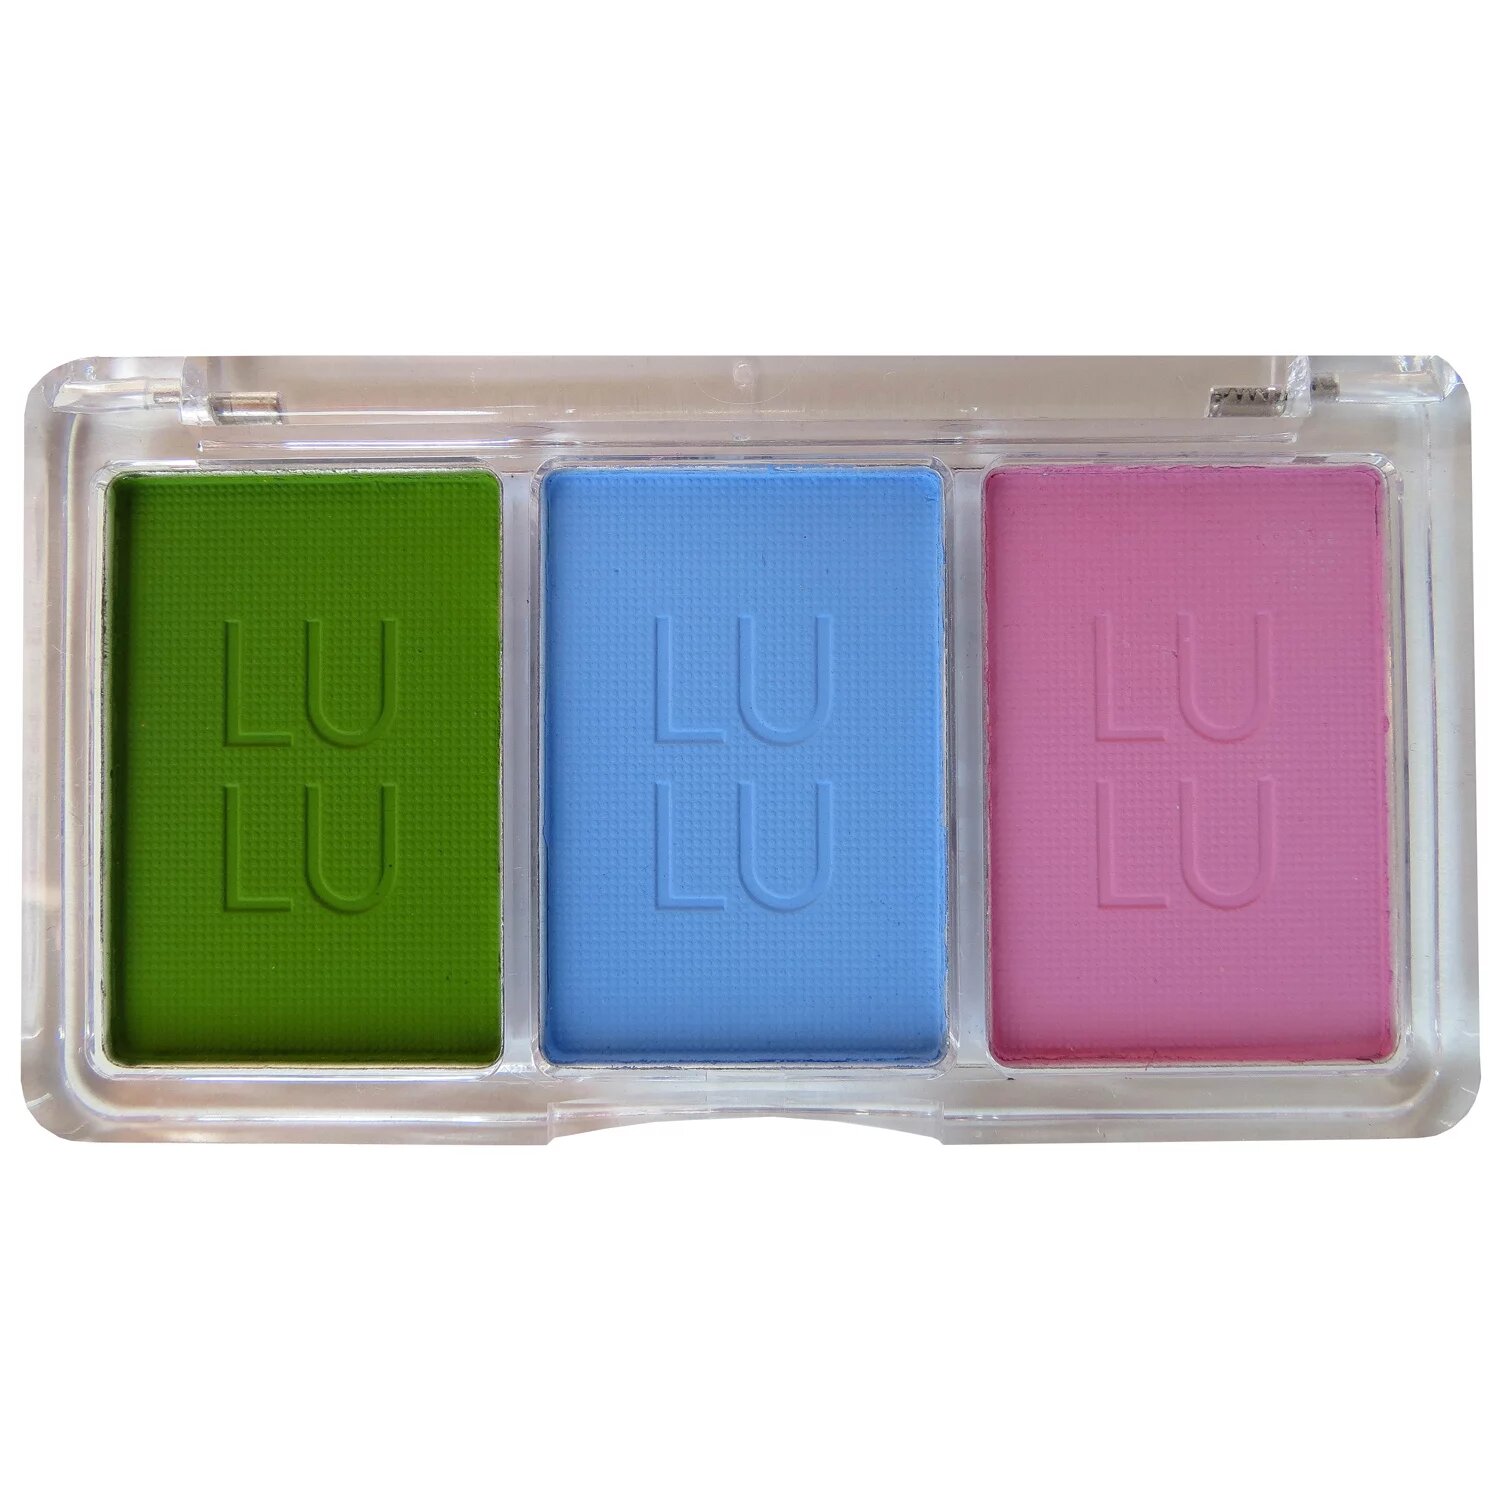 LULU pastel - "Незабудка 1000" Художественная пастель для тонирования фоамирана, ткани, бумаги